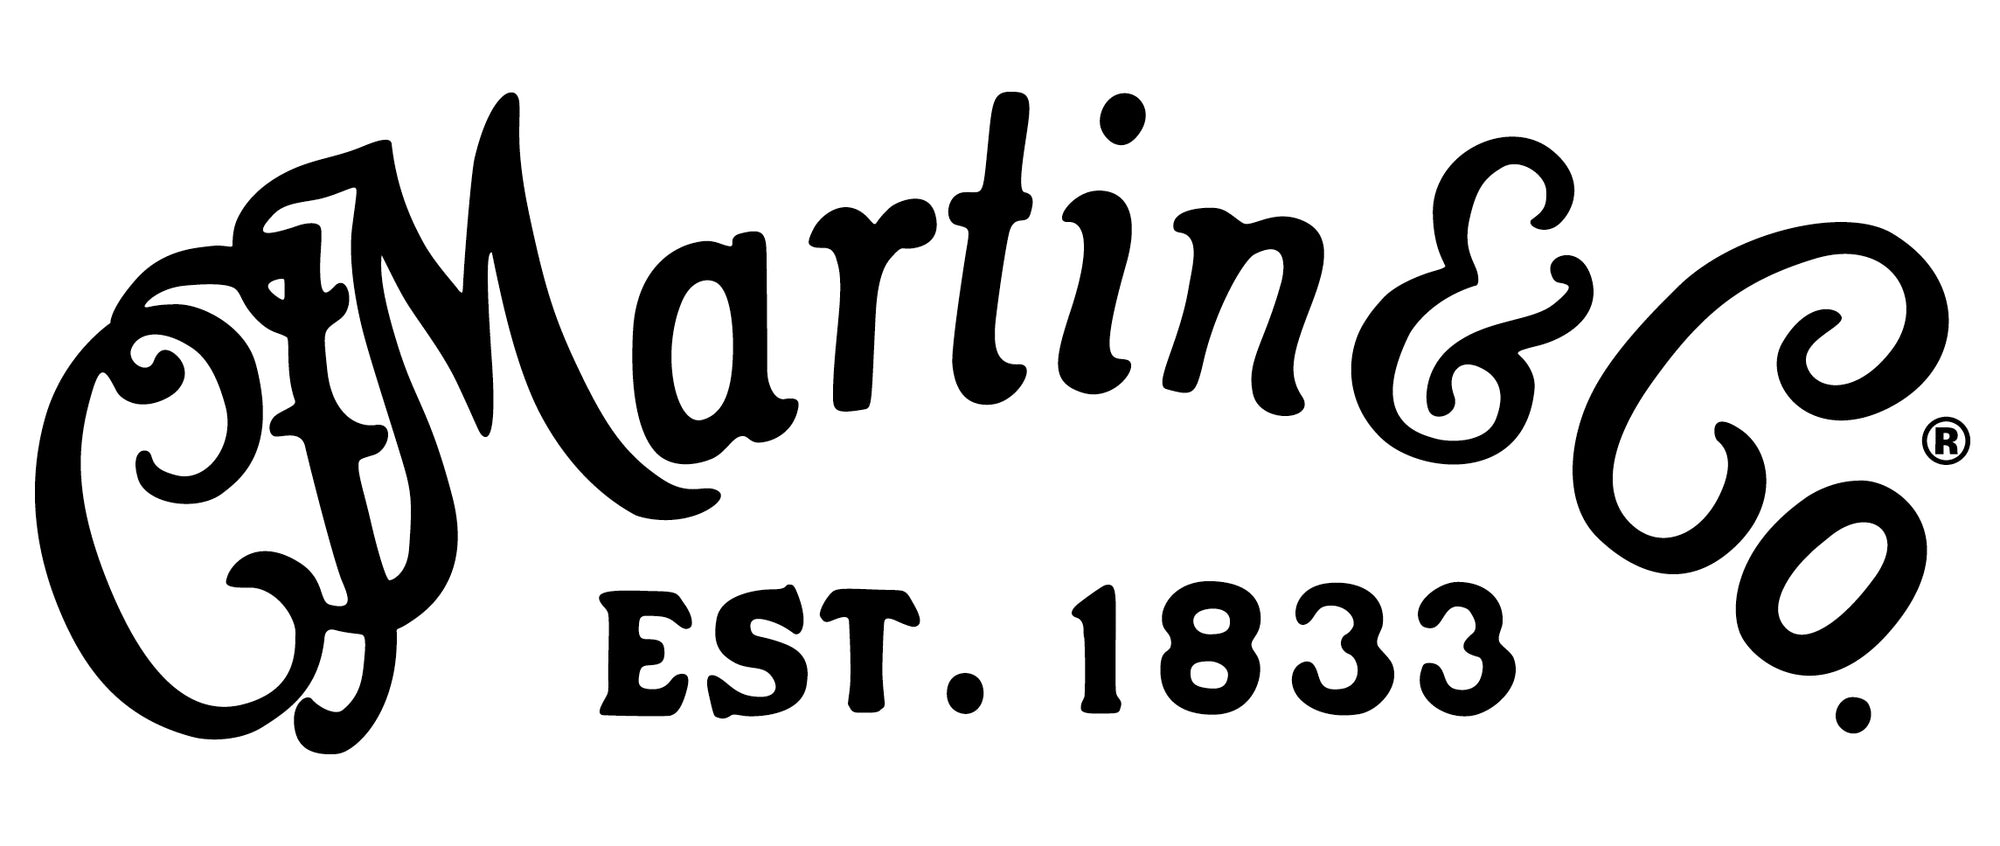 Martin Guitars Calgary Alberta Canada